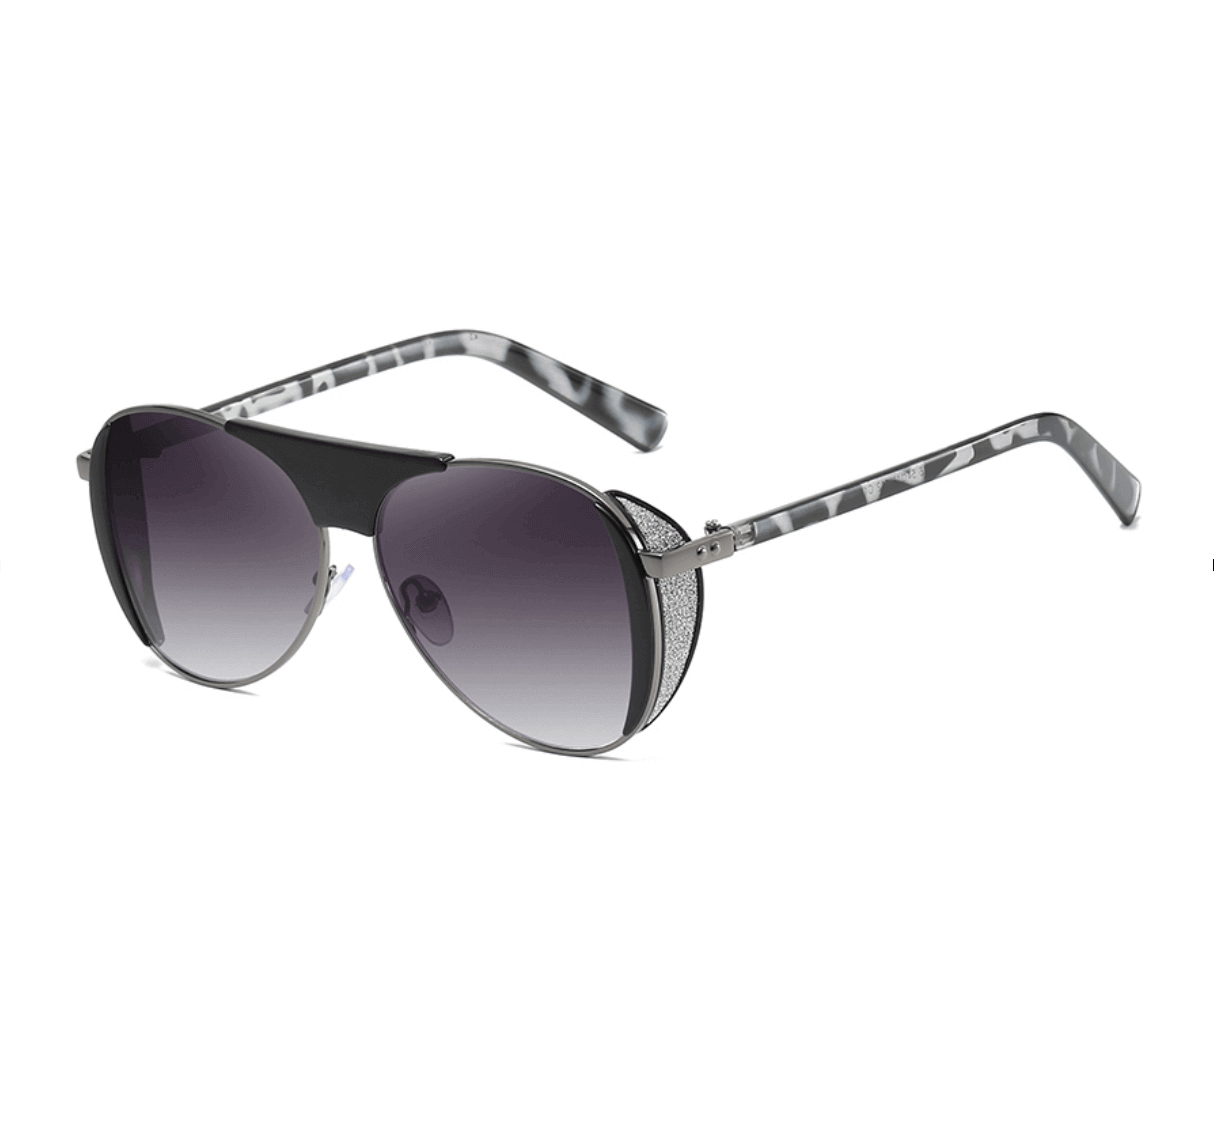 Custom Trendy Sunglasses from China - Custom Sunglasses Manufacturer - Custom Eyewear Manufacturers in China